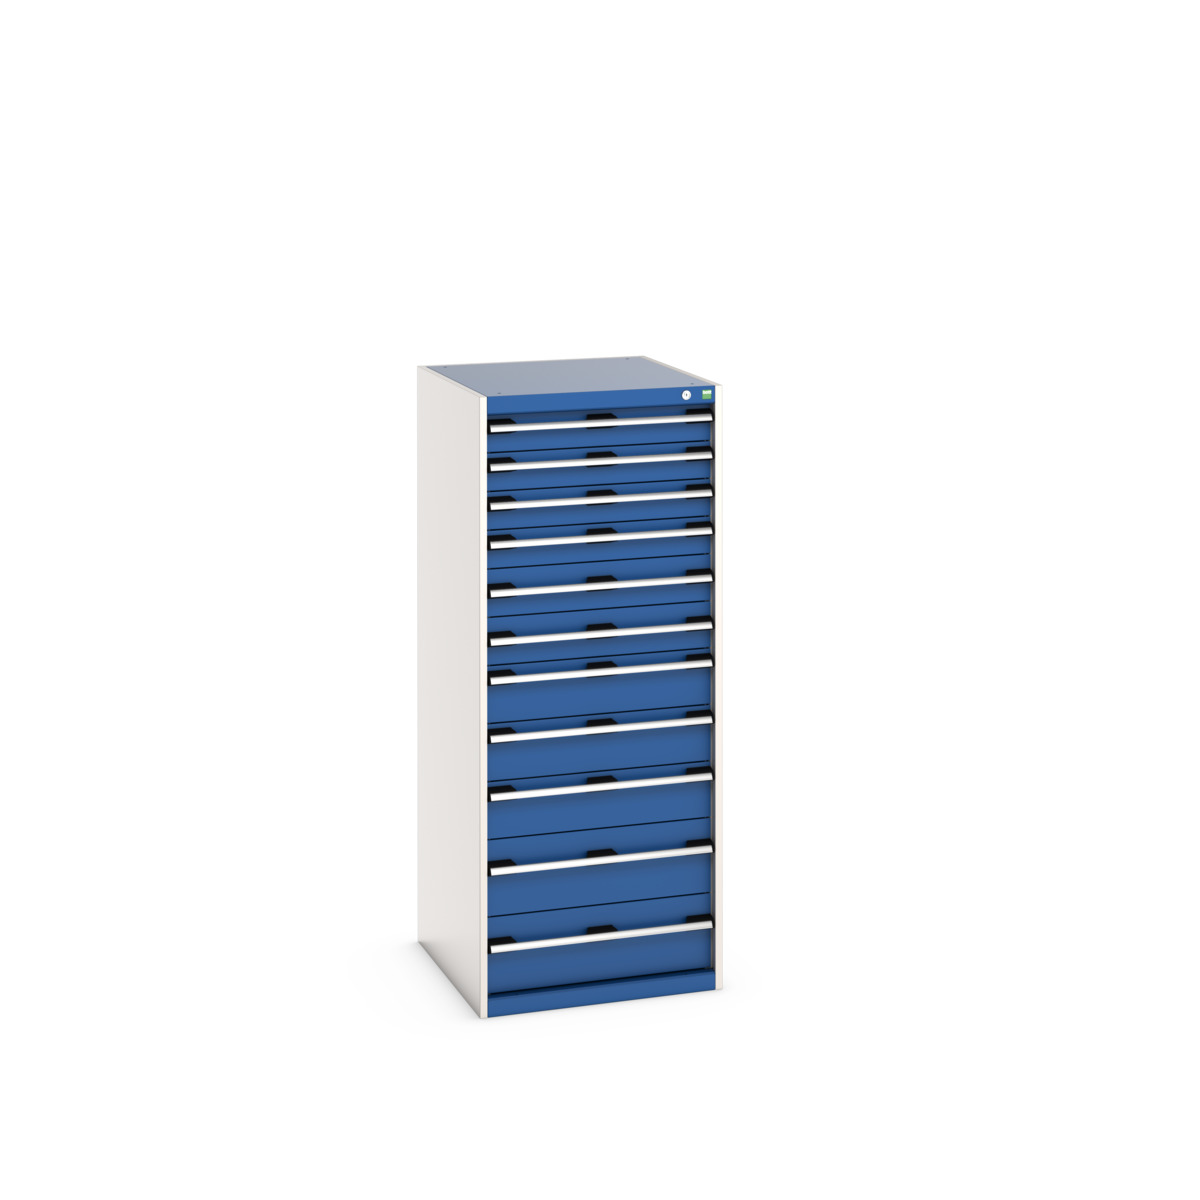 40027047.11V - cubio drawer cabinet